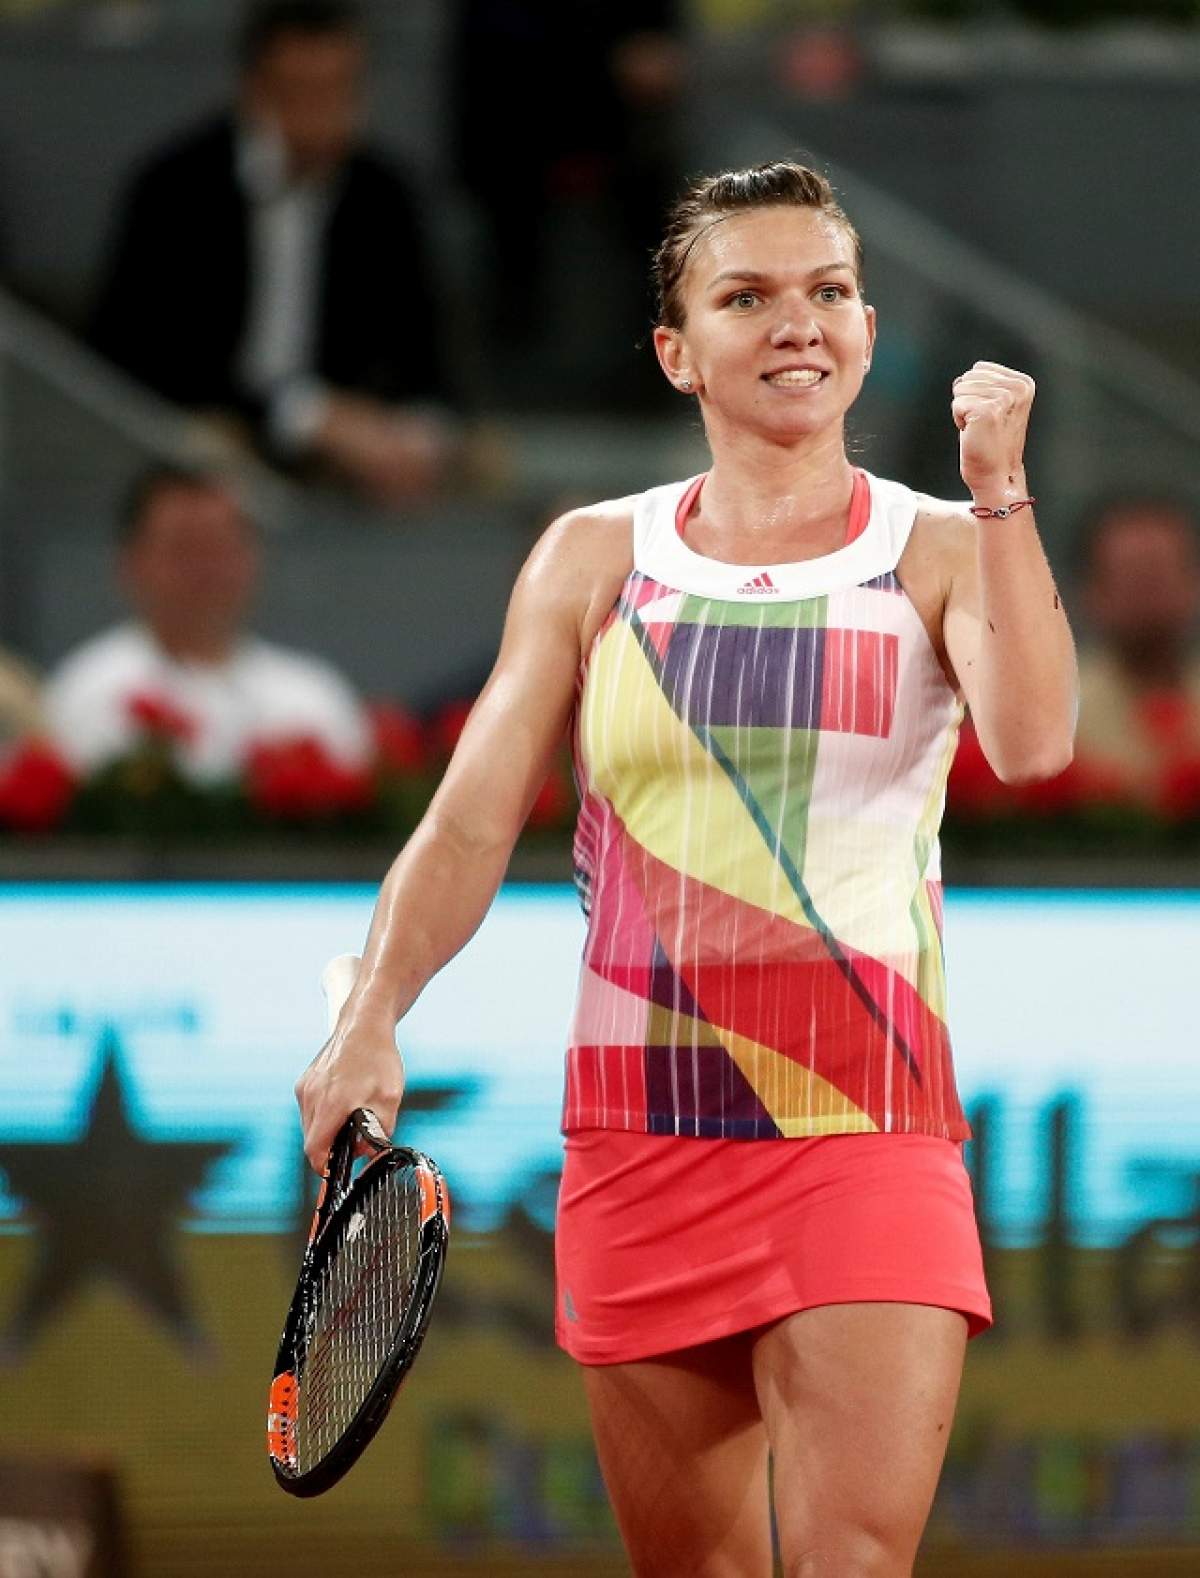 Victorie! Simona Halep şi Irina Begu s-au calificat în optimile de finală de la Roland Garros